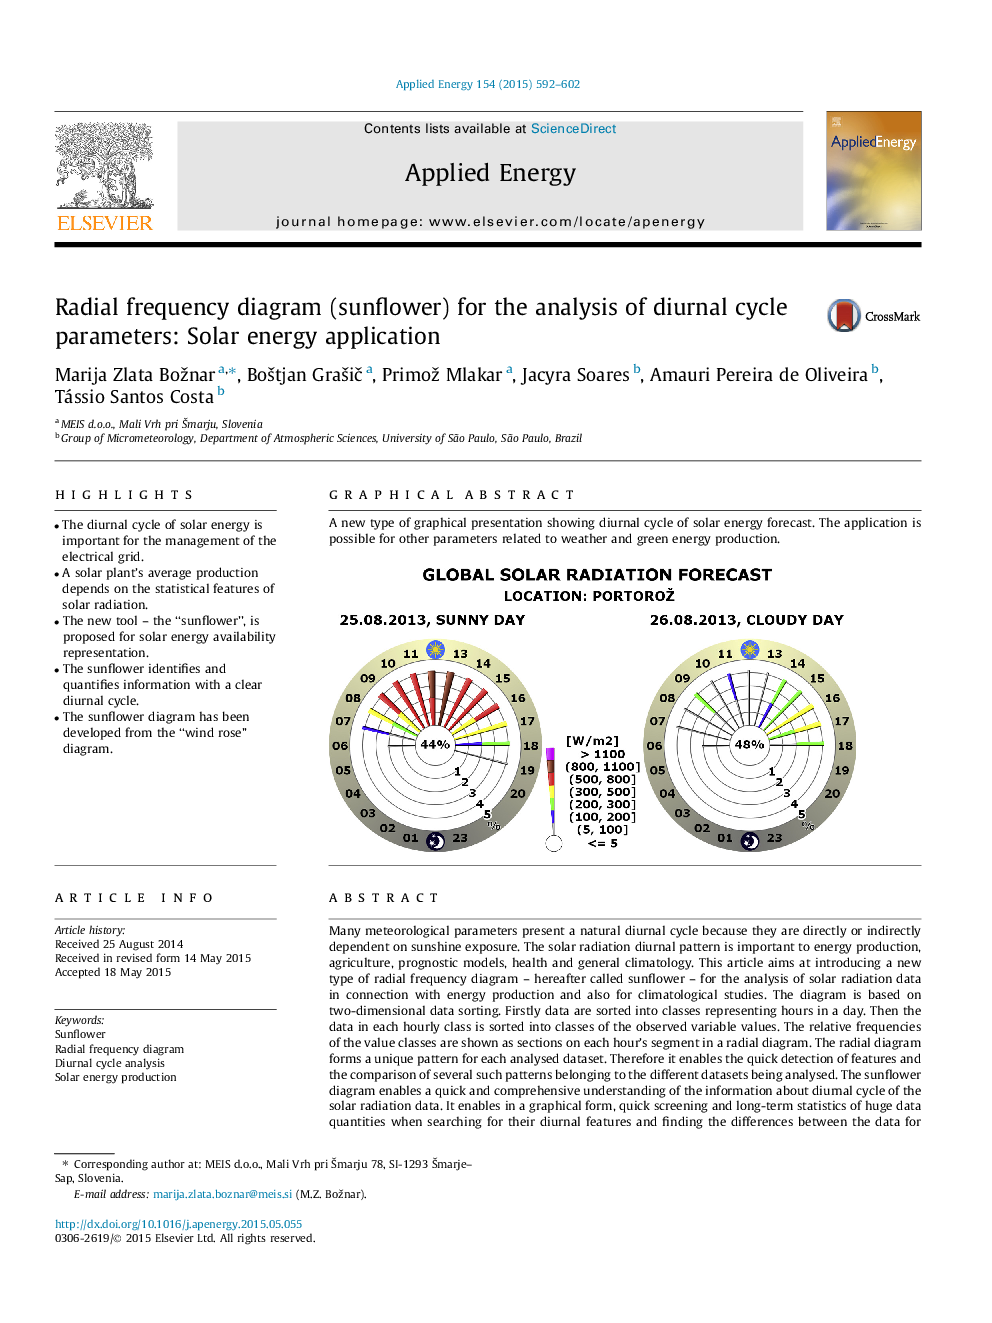 نمودار فرکانس رادیویی (آفتابگردان) برای تجزیه و تحلیل پارامترهای چرخه روزانه: کاربرد انرژی خورشیدی 